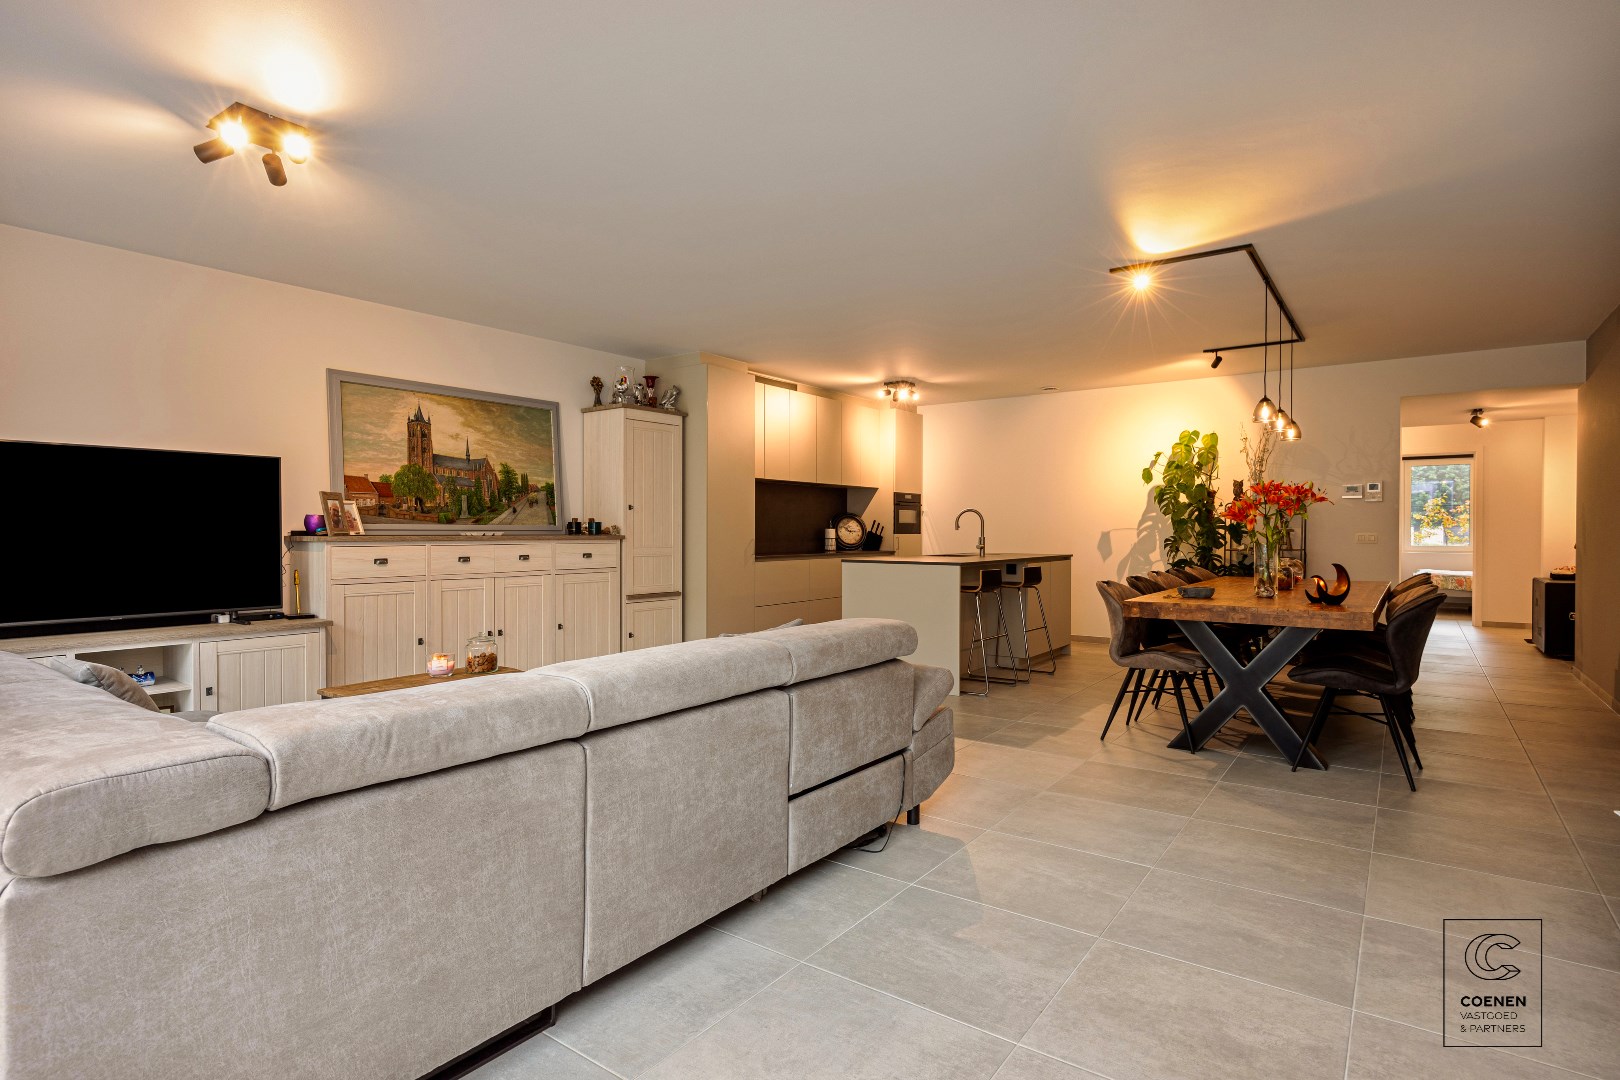 Piekfijn, modern gelijkvloersappartement met 2 slaapkamers, priv&#233;tuin (70 m2) en ondergrondse garage  (+ €30.000) 